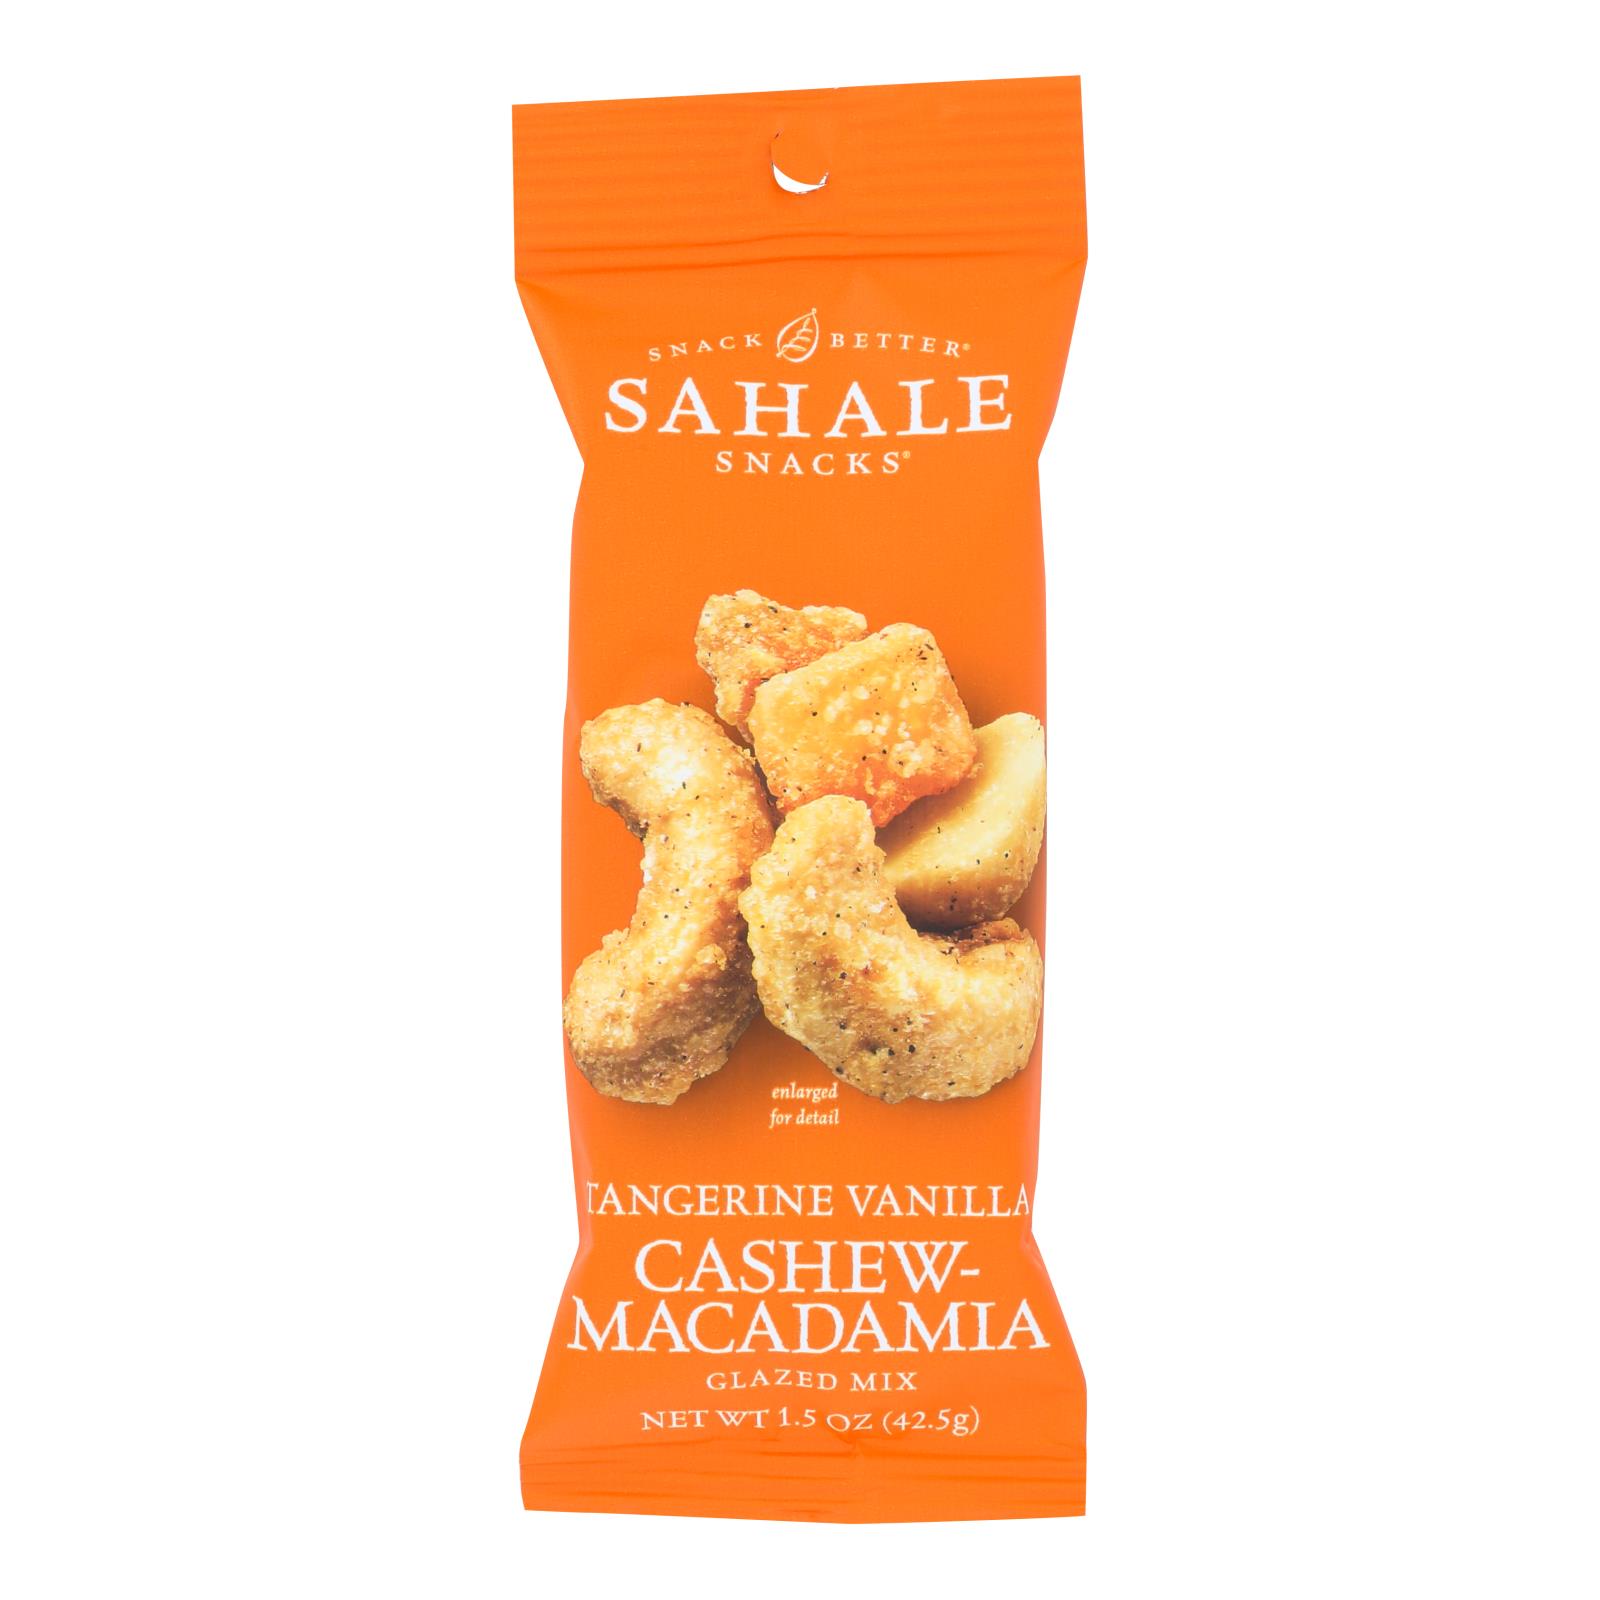 Sahale Tangerine Vanilla Cashew Macadamia Glazed Mix - 9개 묶음상품 - 1.5 OZ